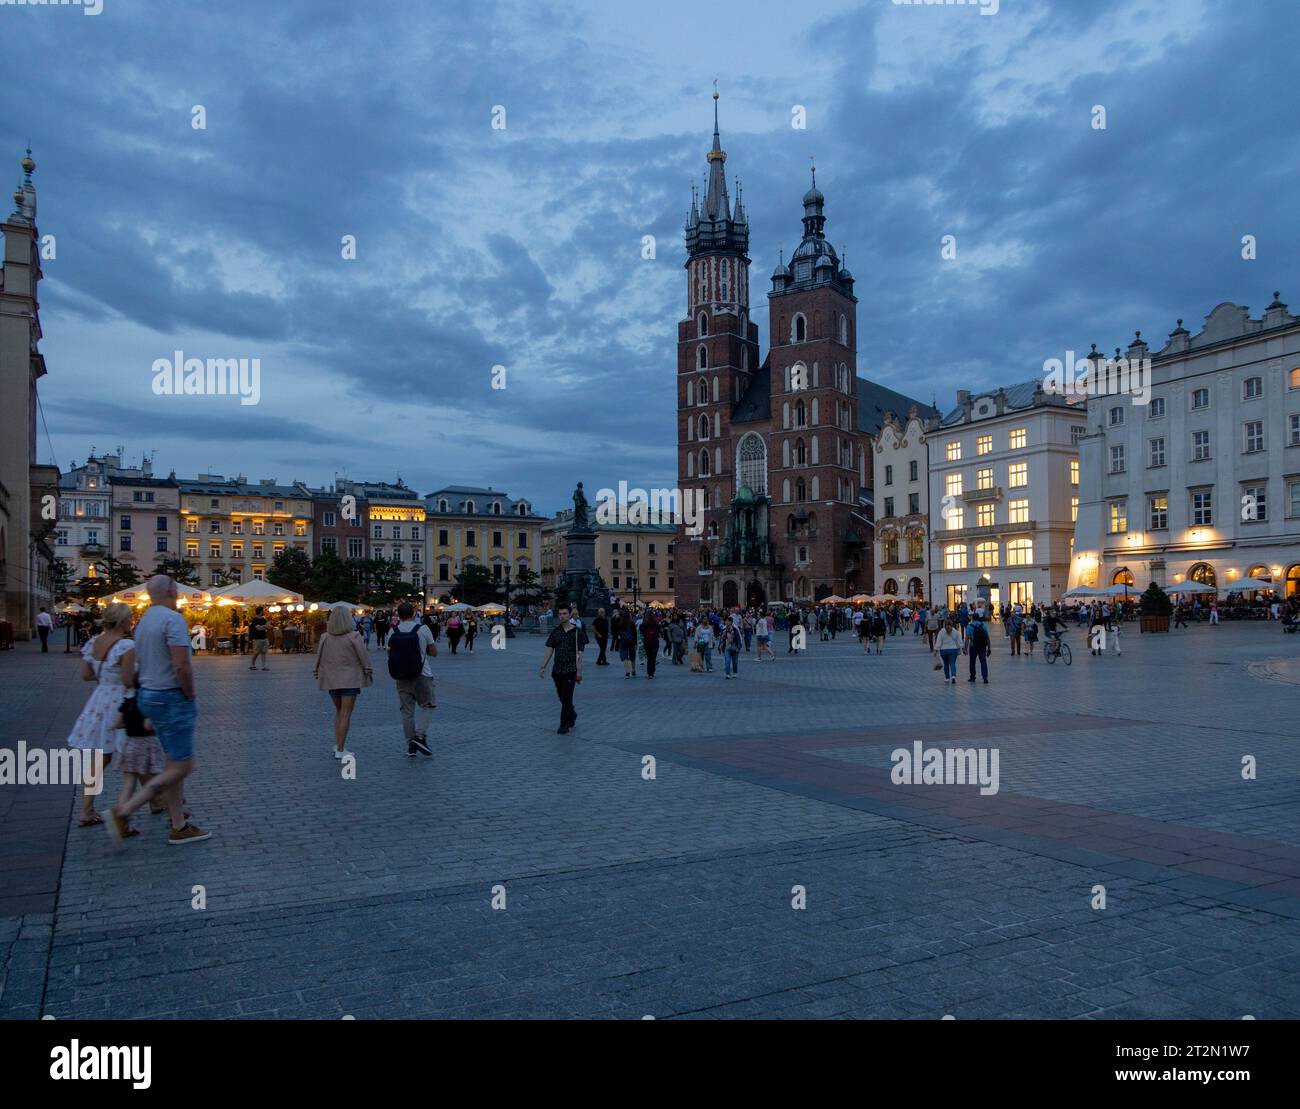 Basilique Sainte-Marie et place du marché au crépuscule à Kraków, Pologne Banque D'Images